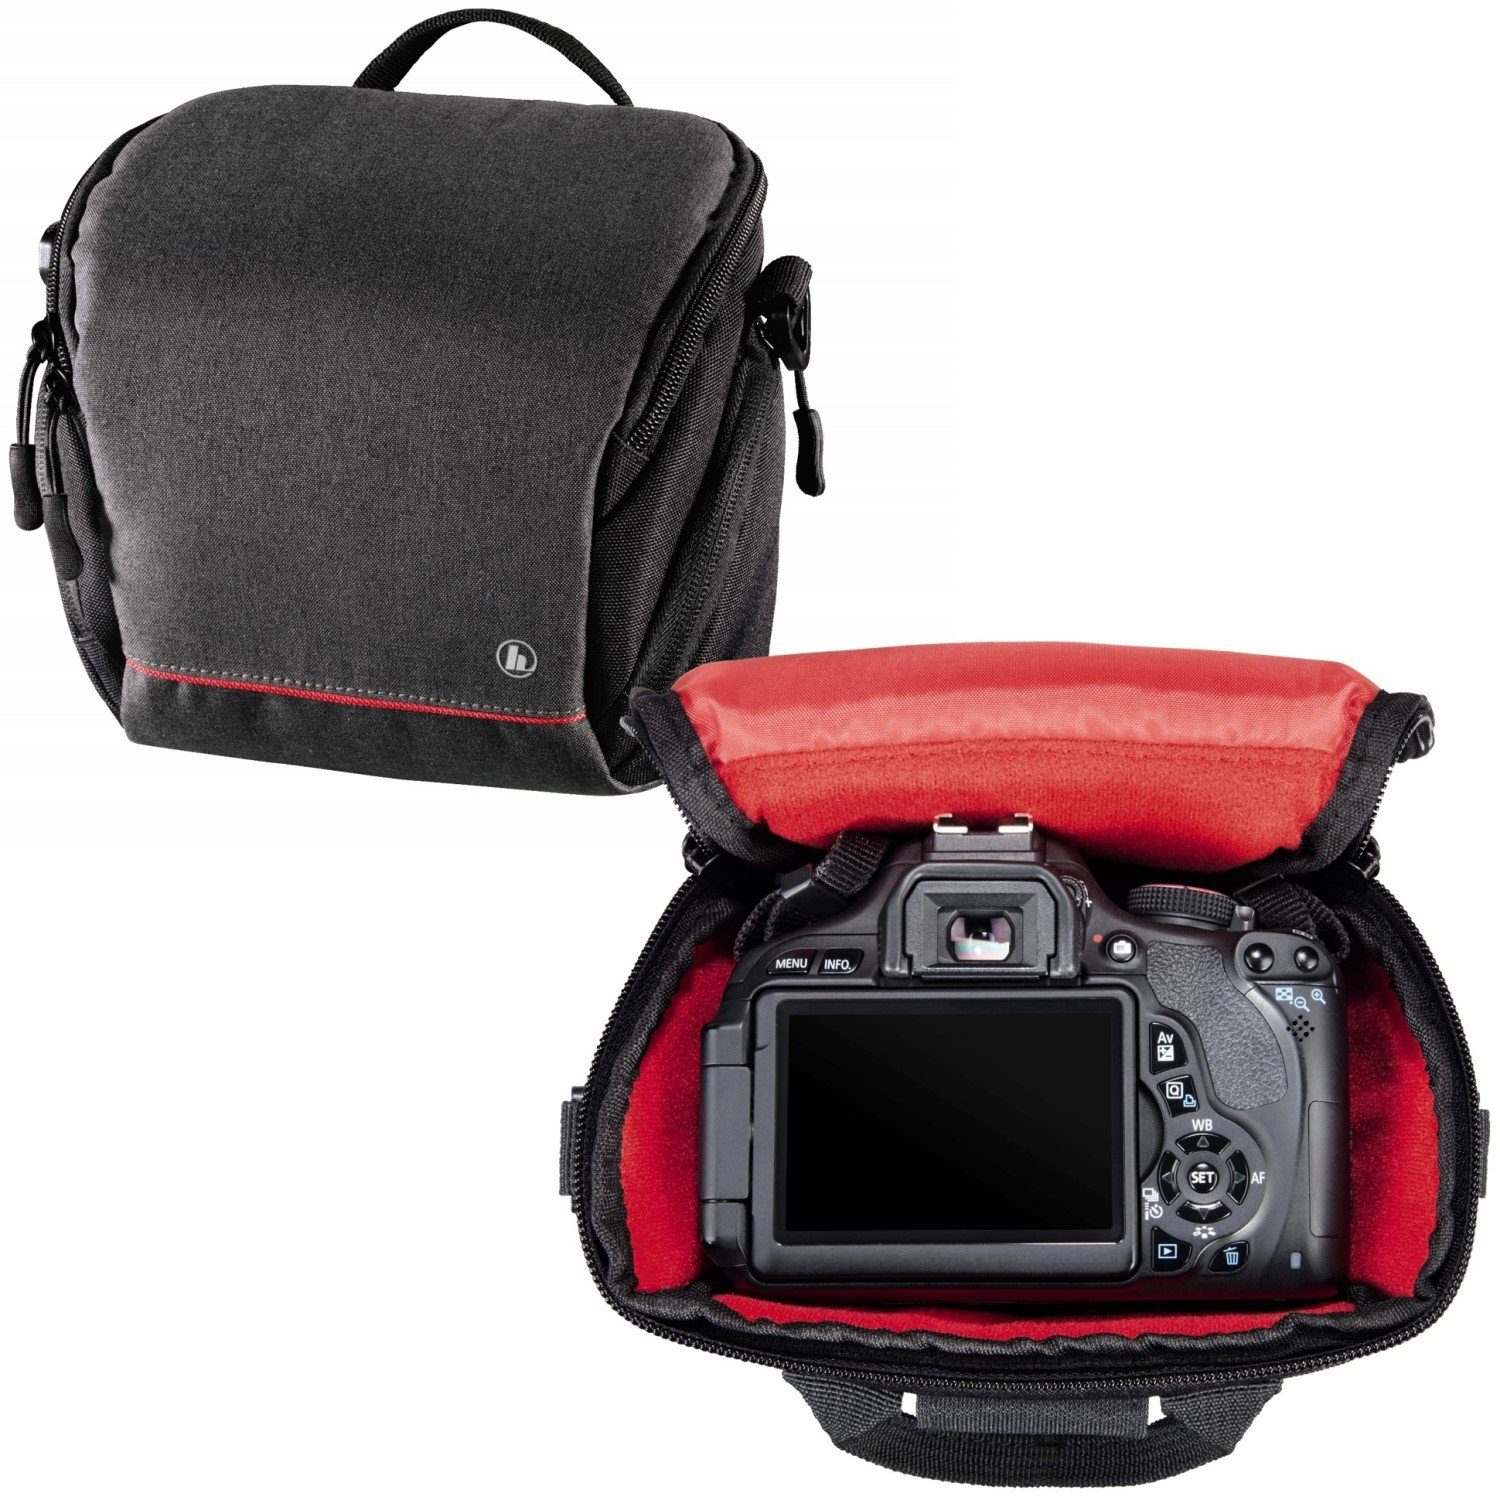 Systemkamera Hama Kamera-Tasche Schultergurt Zubehör-Fächer 110 Universal, Foto-Tasche Tragegriff Sambia Kameratasche Digitalkamera Case